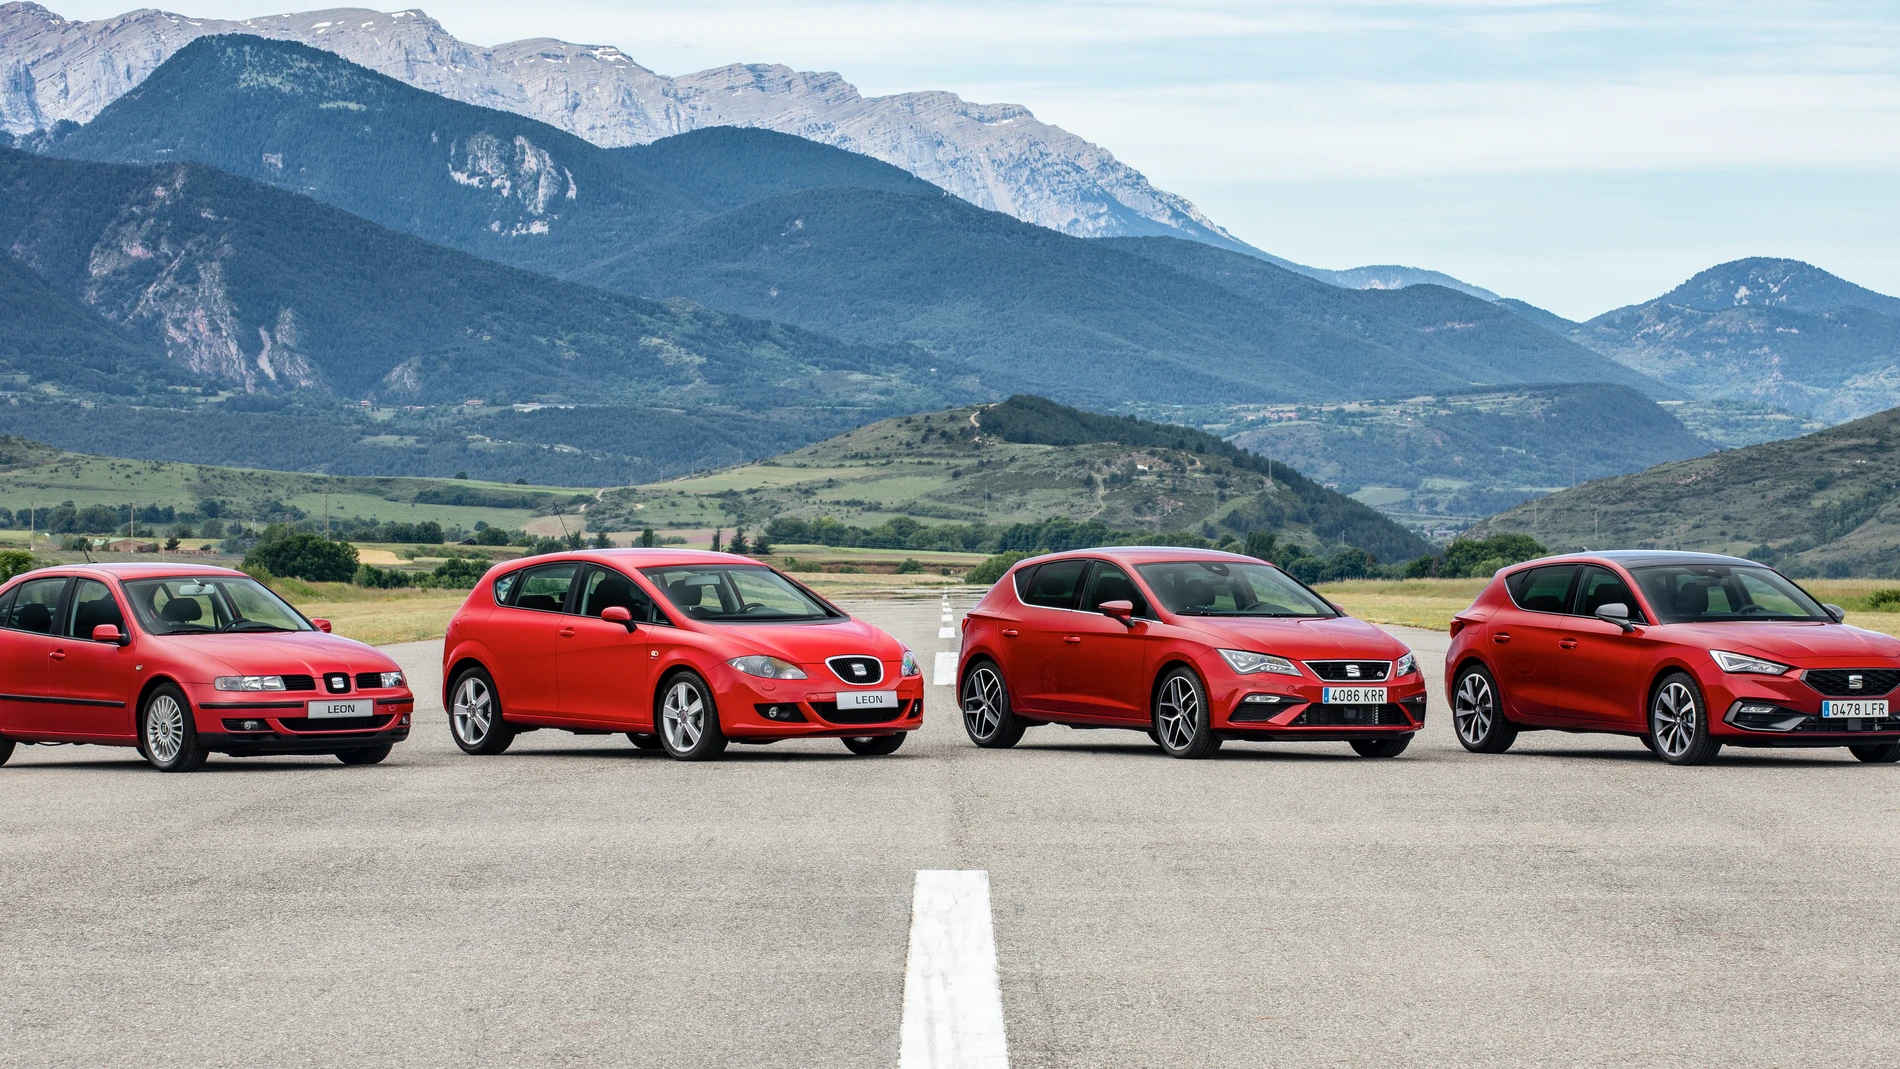 Las cuatro generaciones del SEAT León se reúnen - Periodismo del Motor